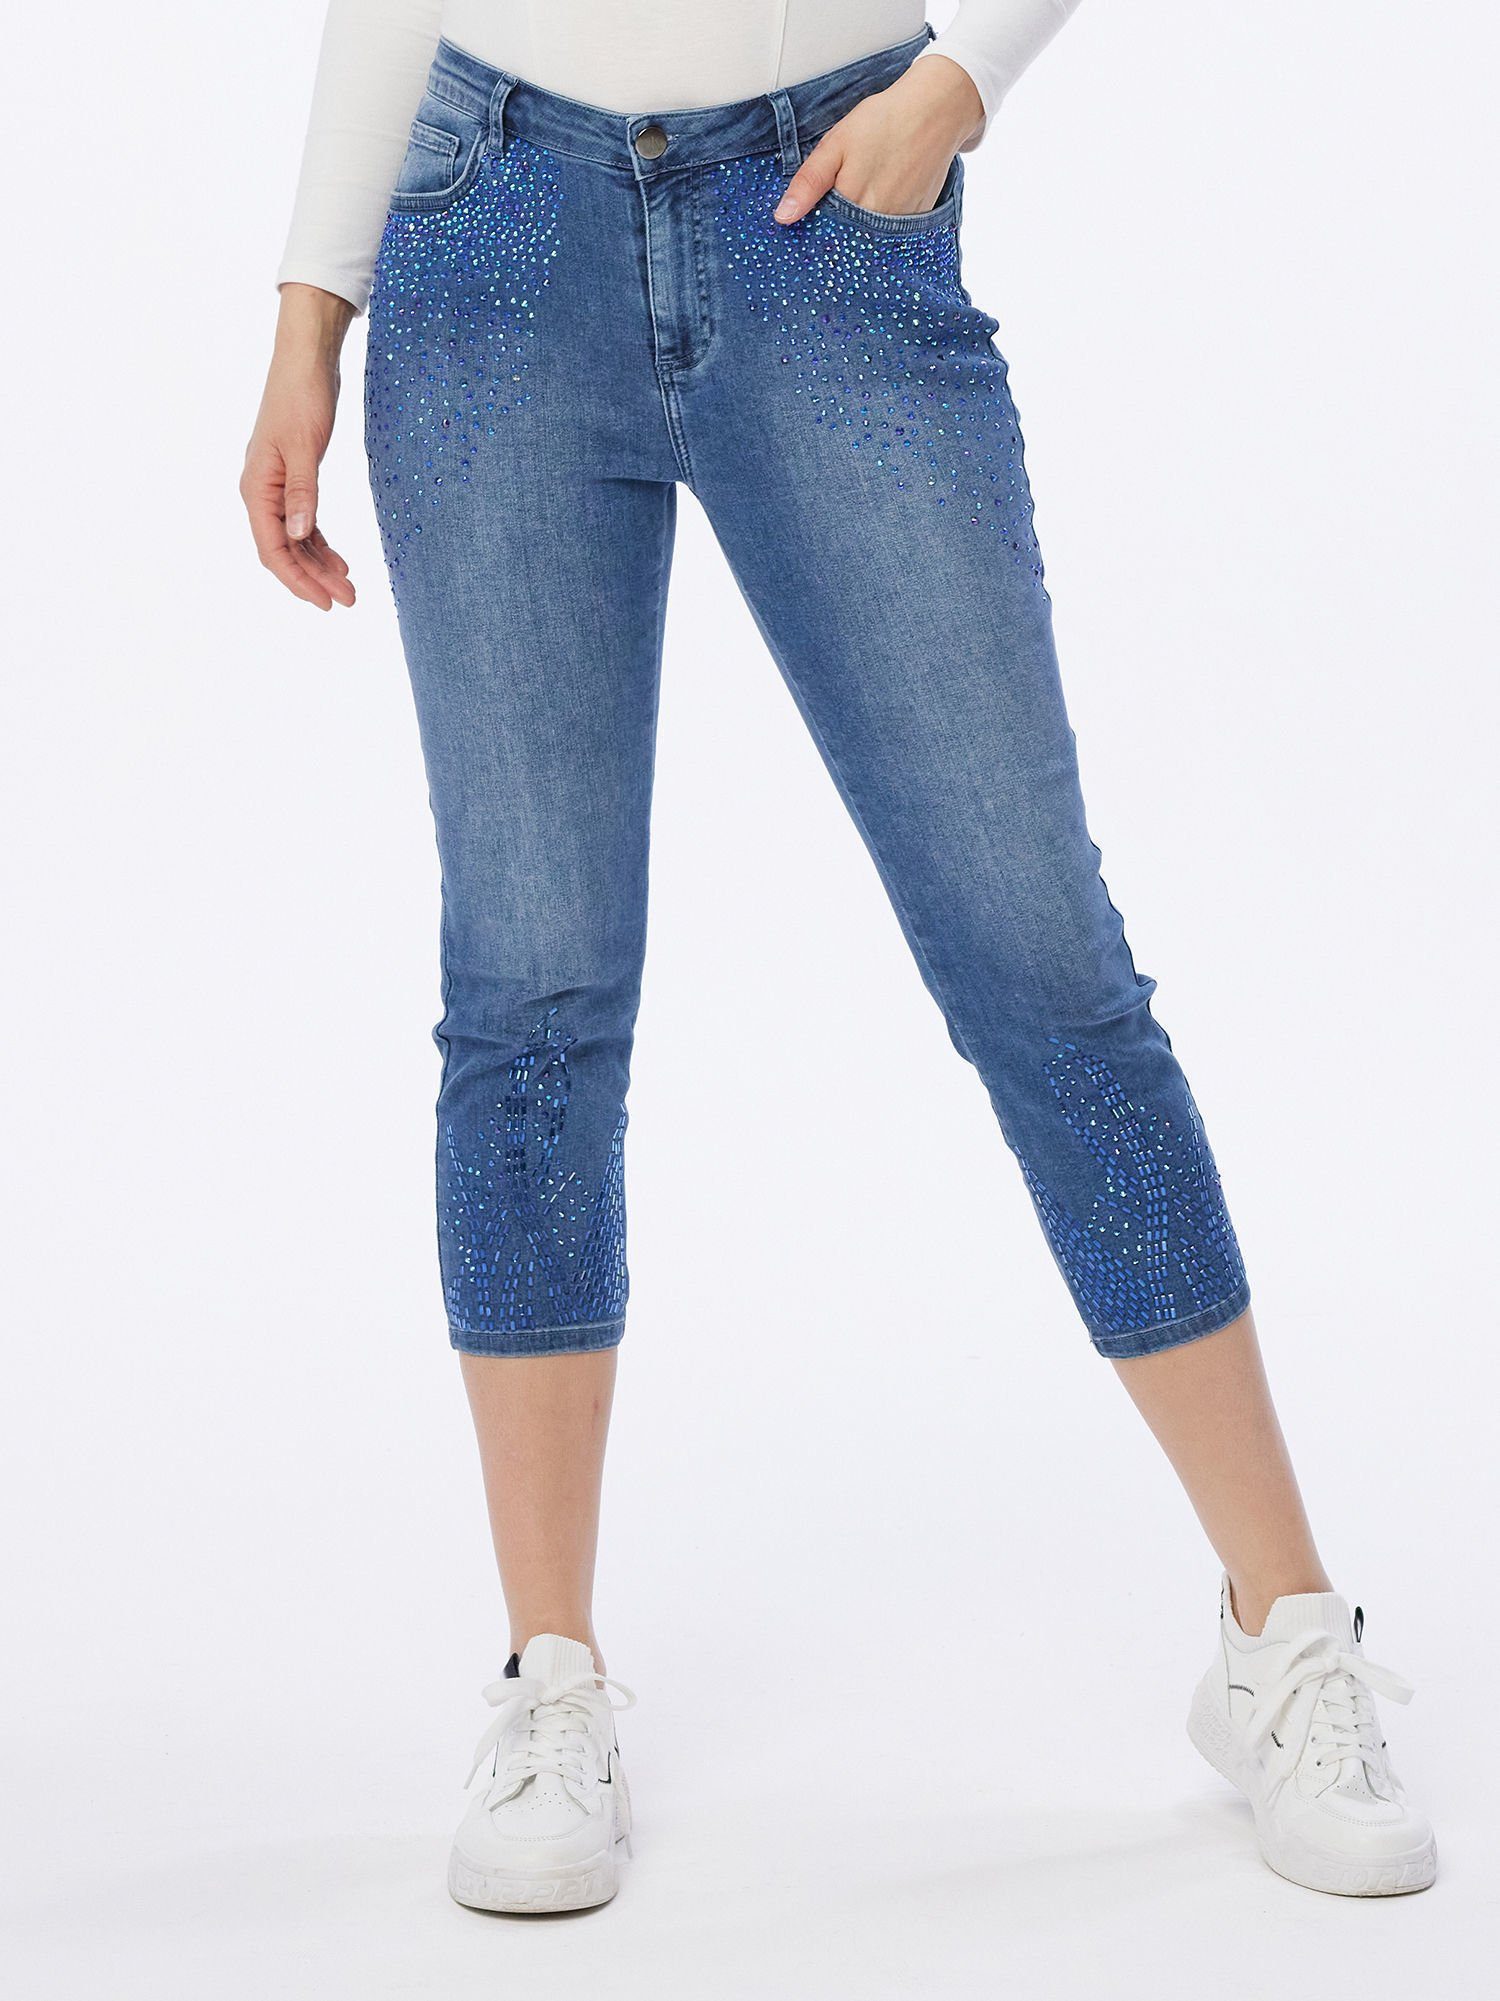 Sarah Kern Skinny-fit-Jeans aufwendig veredelt mit Strasssteinen